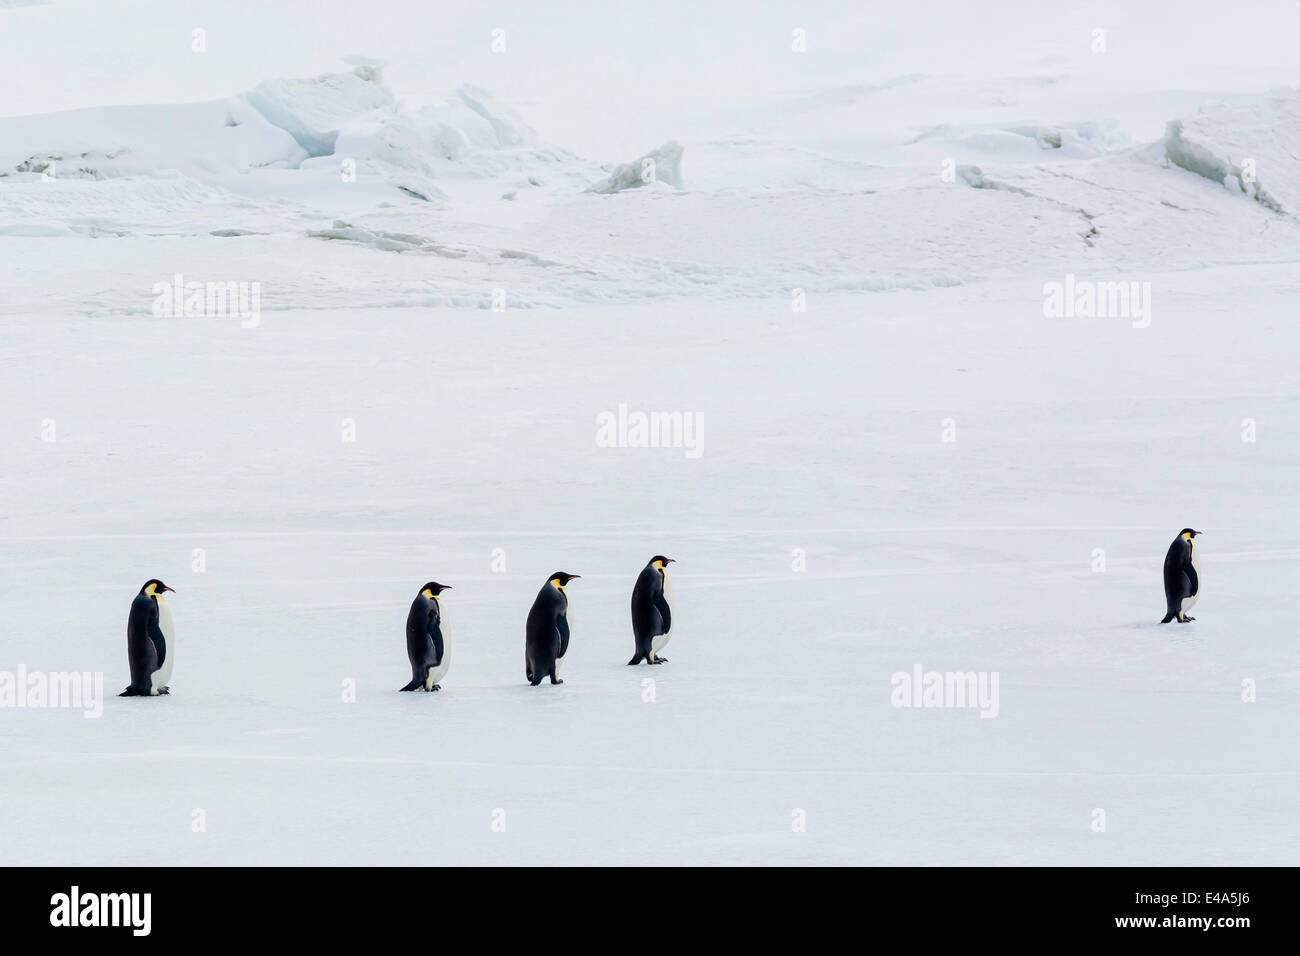 Pinguini imperatore (Aptenodytes forsteri) marciando in mare di ghiaccio su Snow Hill Island, Mare di Weddell, Antartide, regioni polari Foto Stock